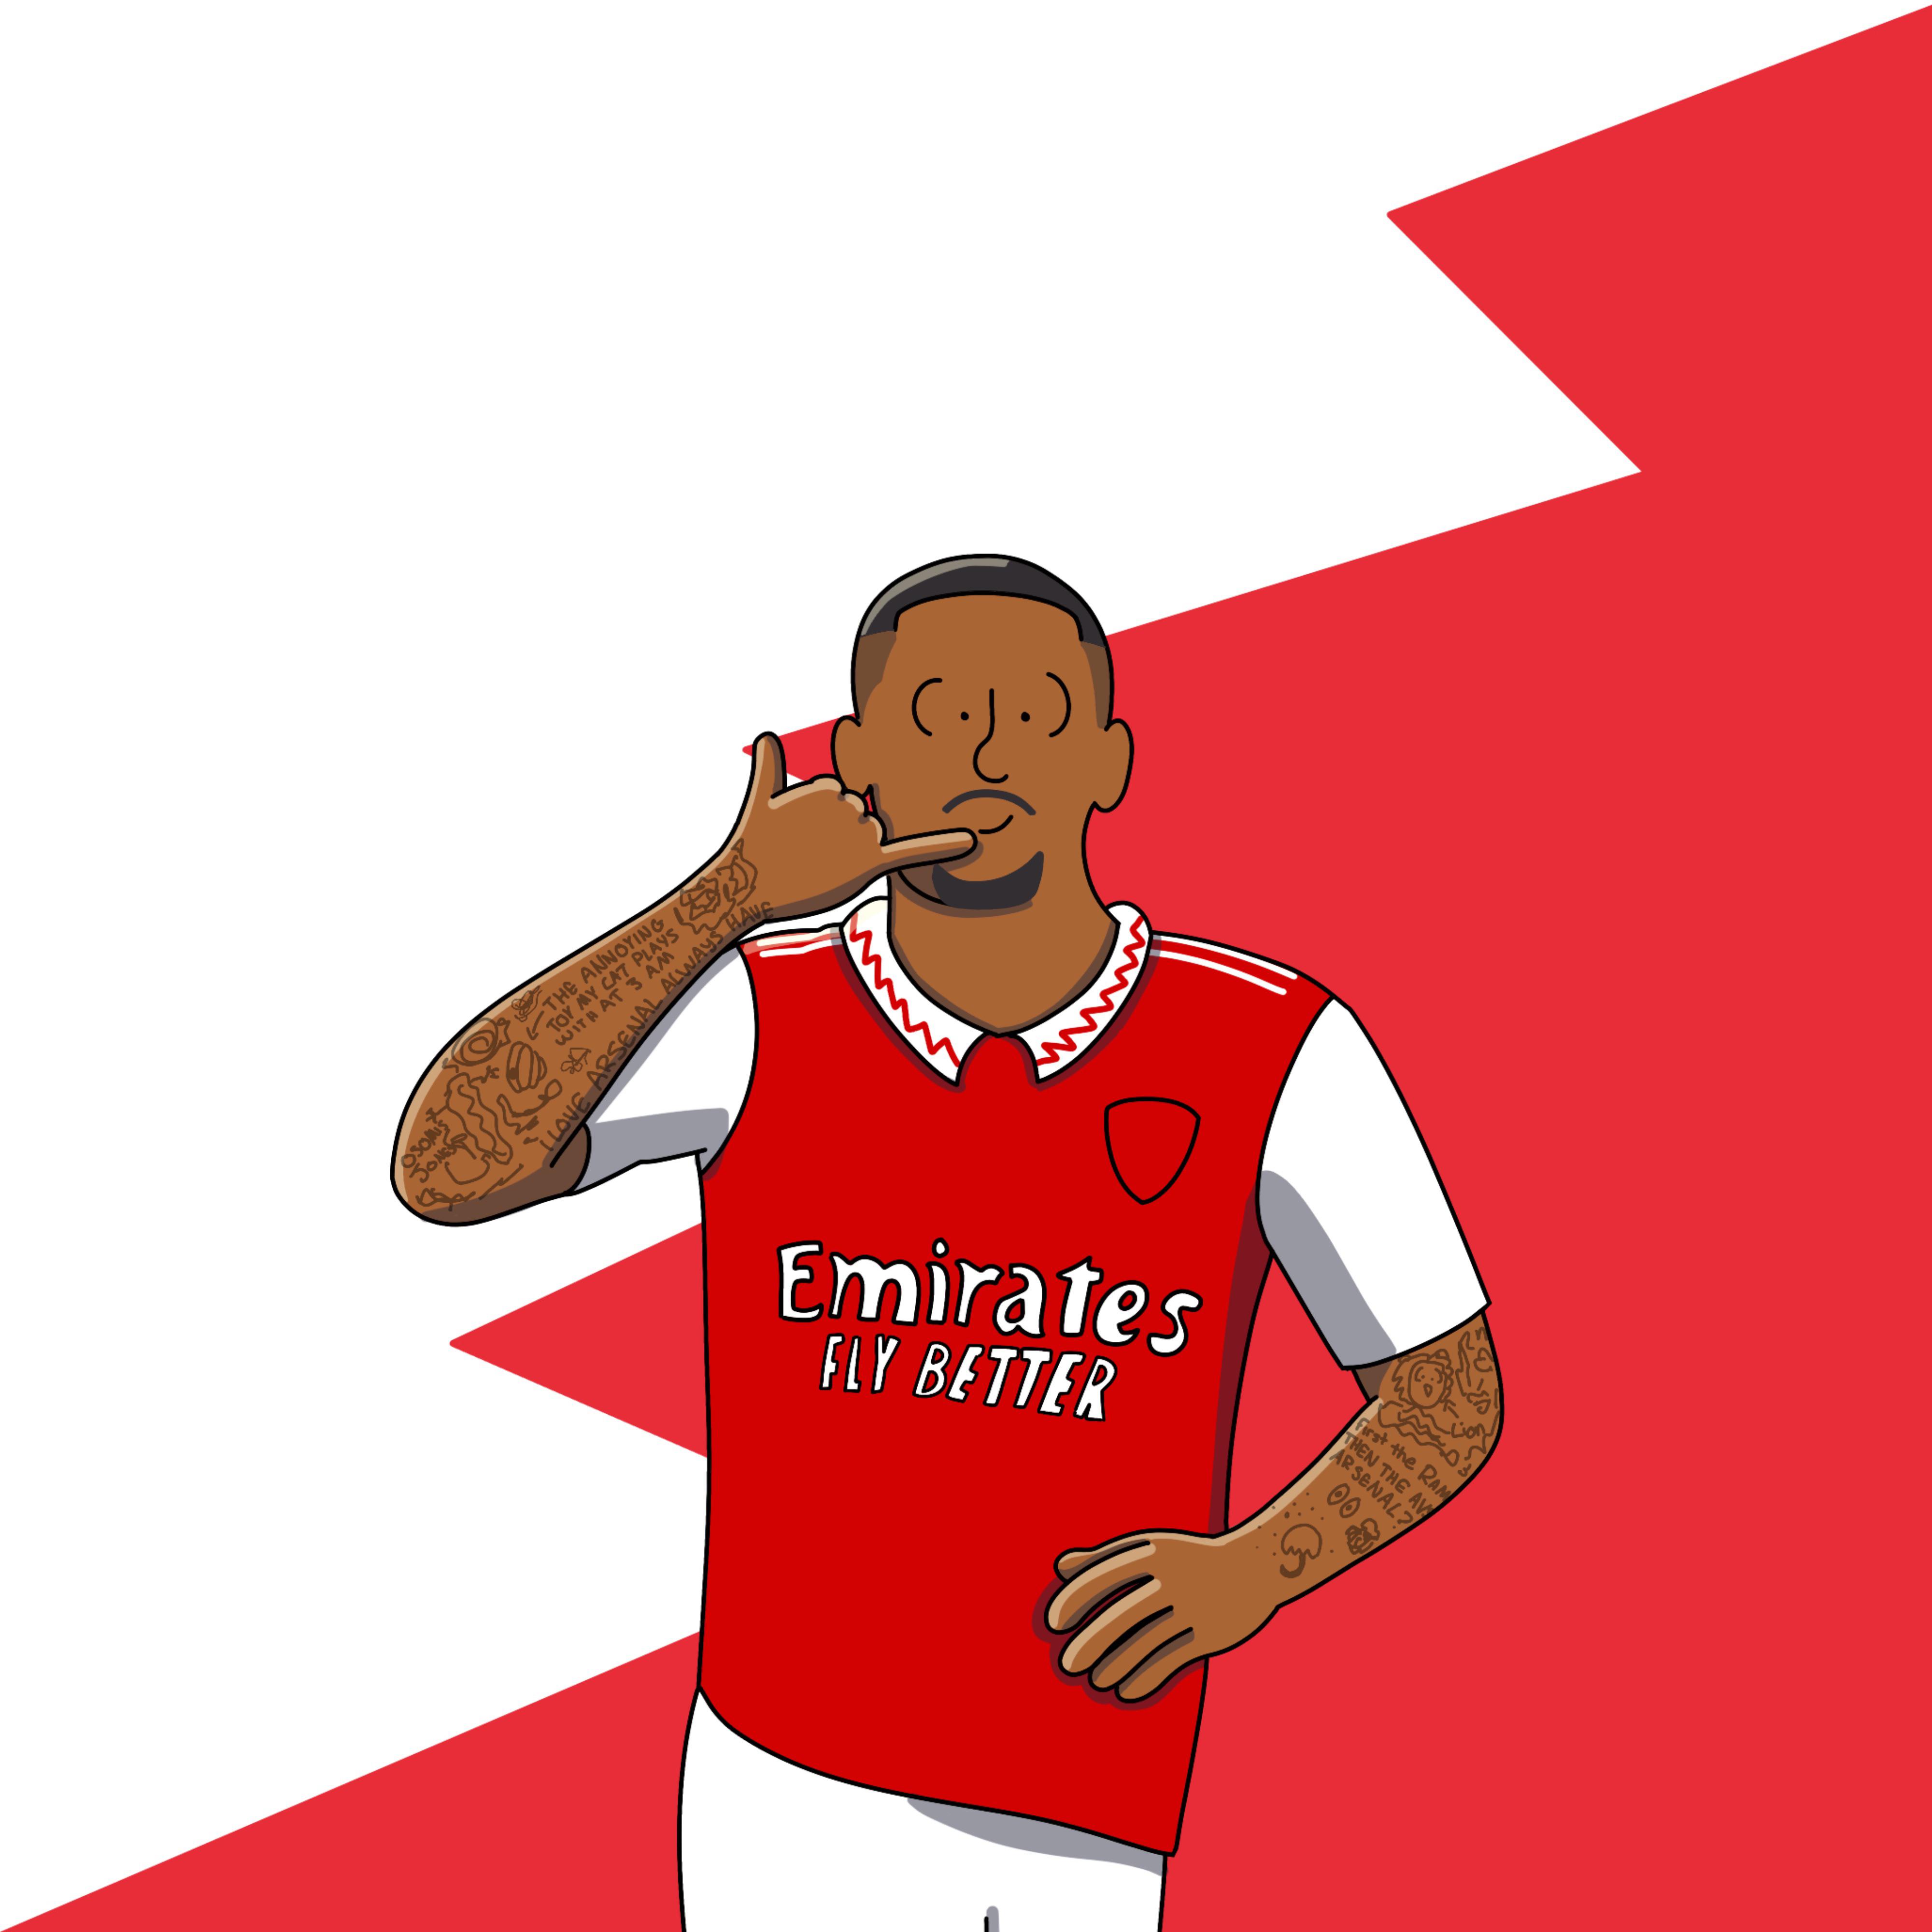 Arsenal sign Gabriel Jesus